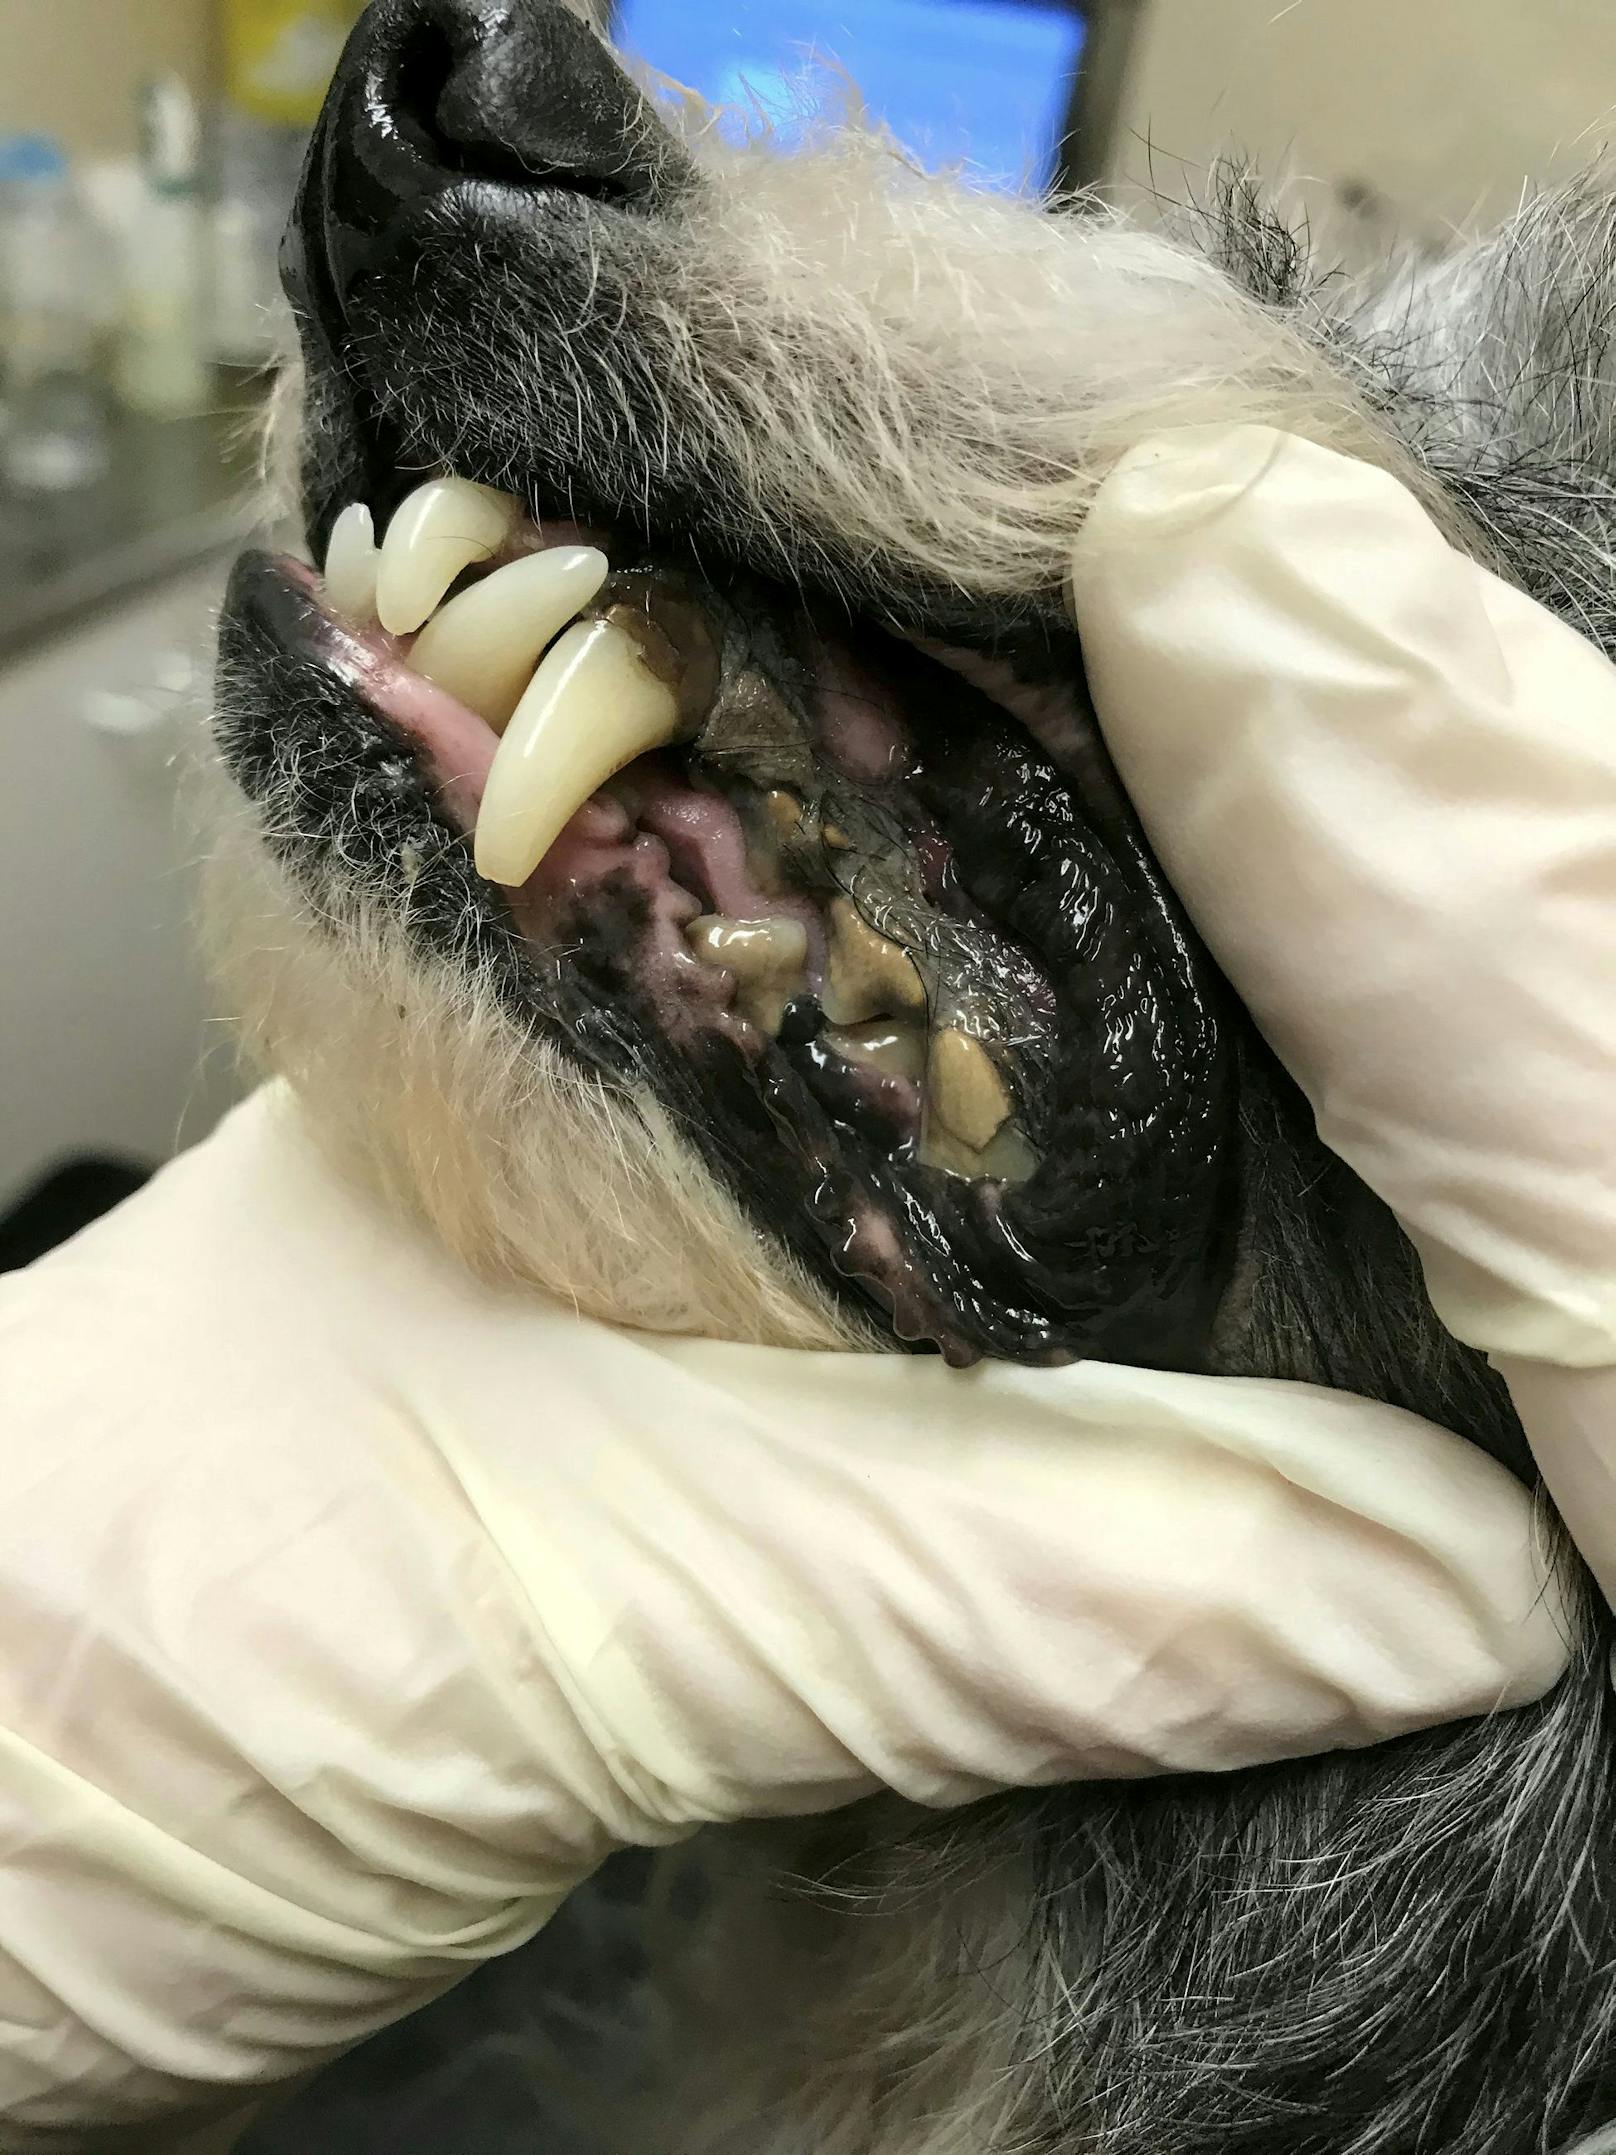 Auch Hunde wurden vernachlässigt, wie Terrier "Dudley" der Zahn-, Haut- und Augenprobleme hatte. 